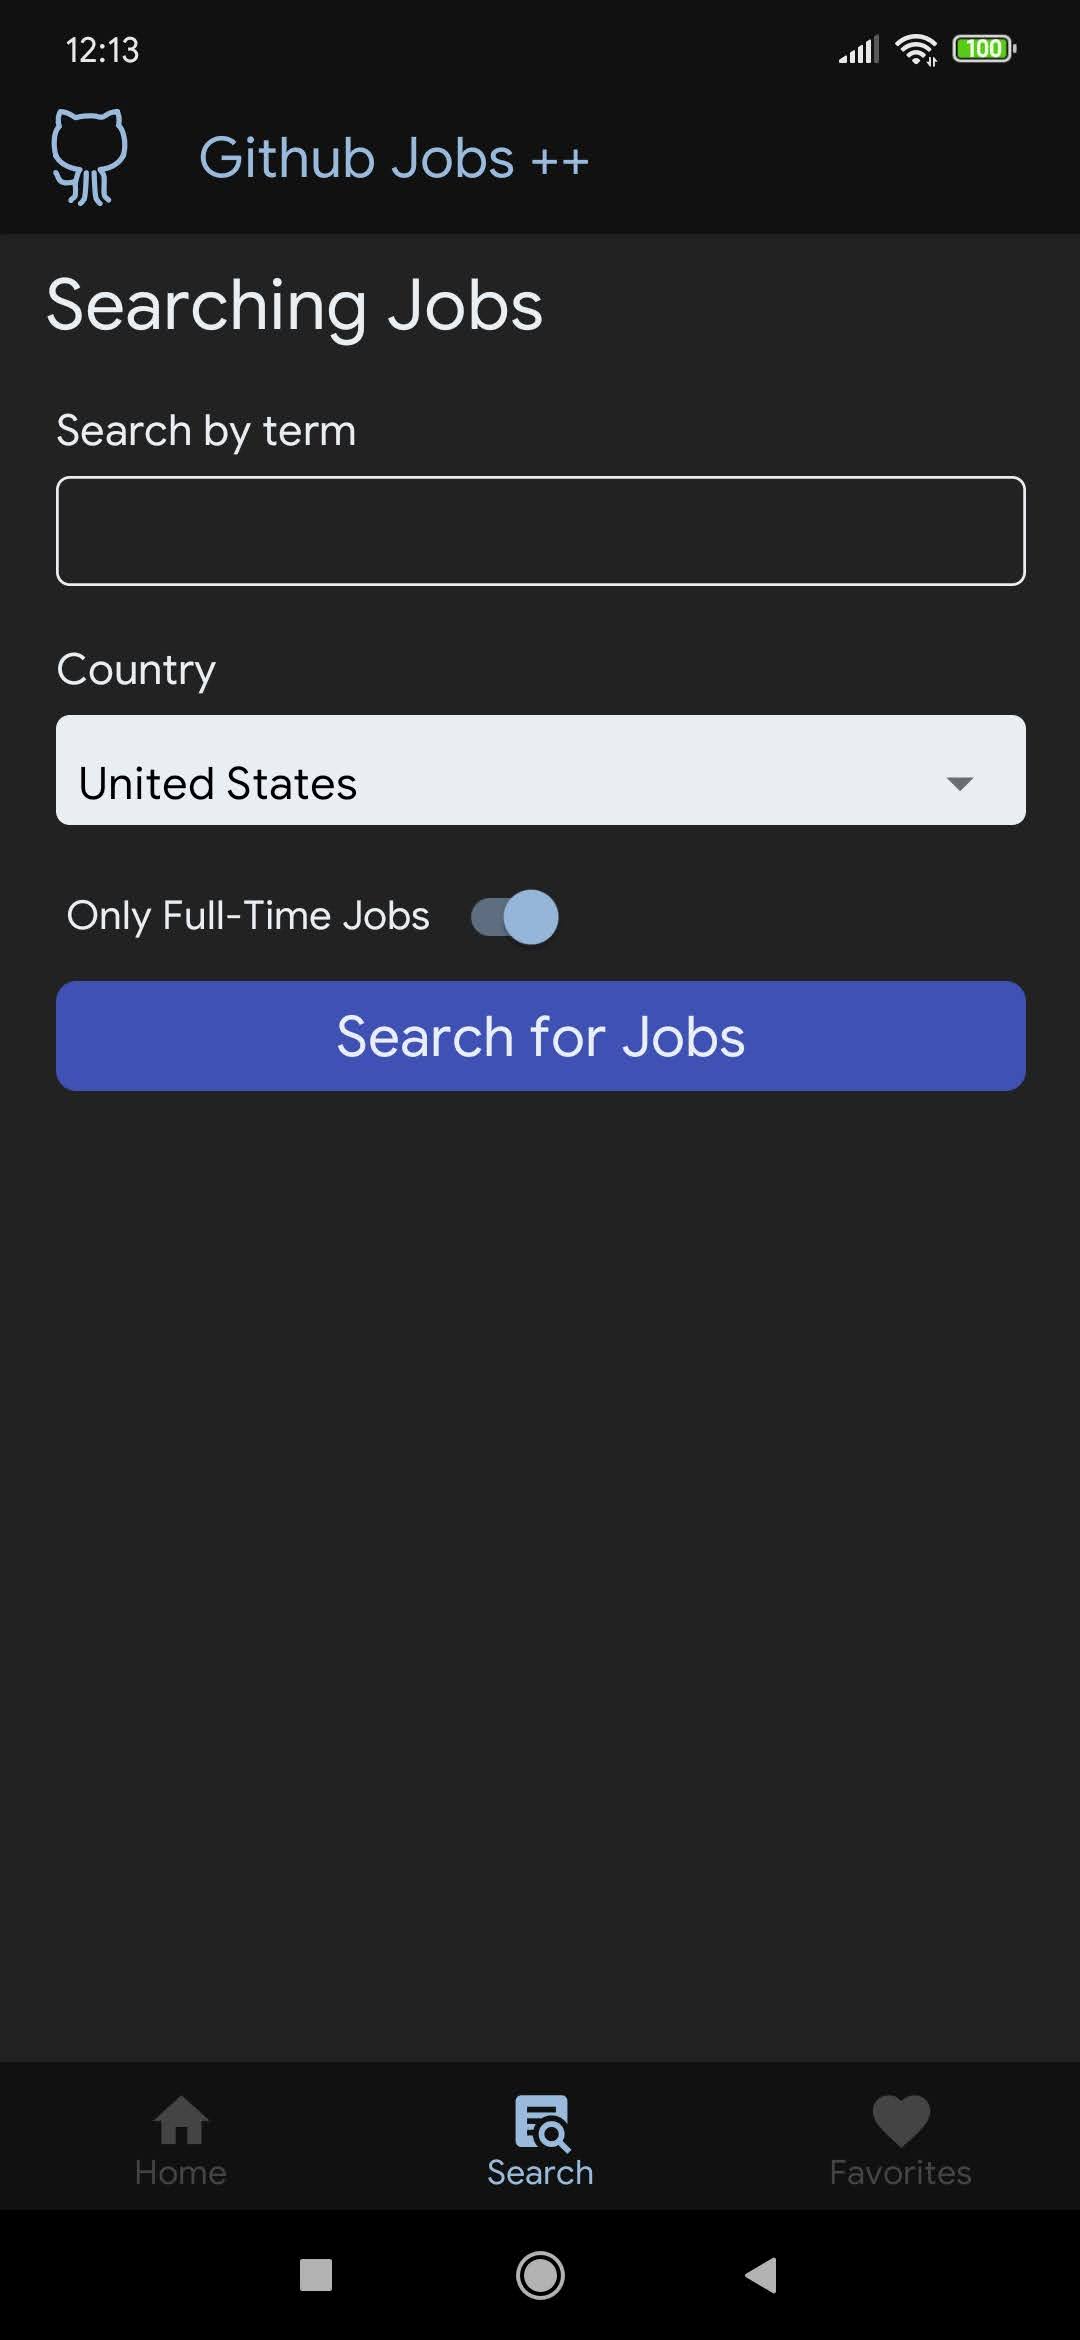 Home screen for Github Jobs ++ app